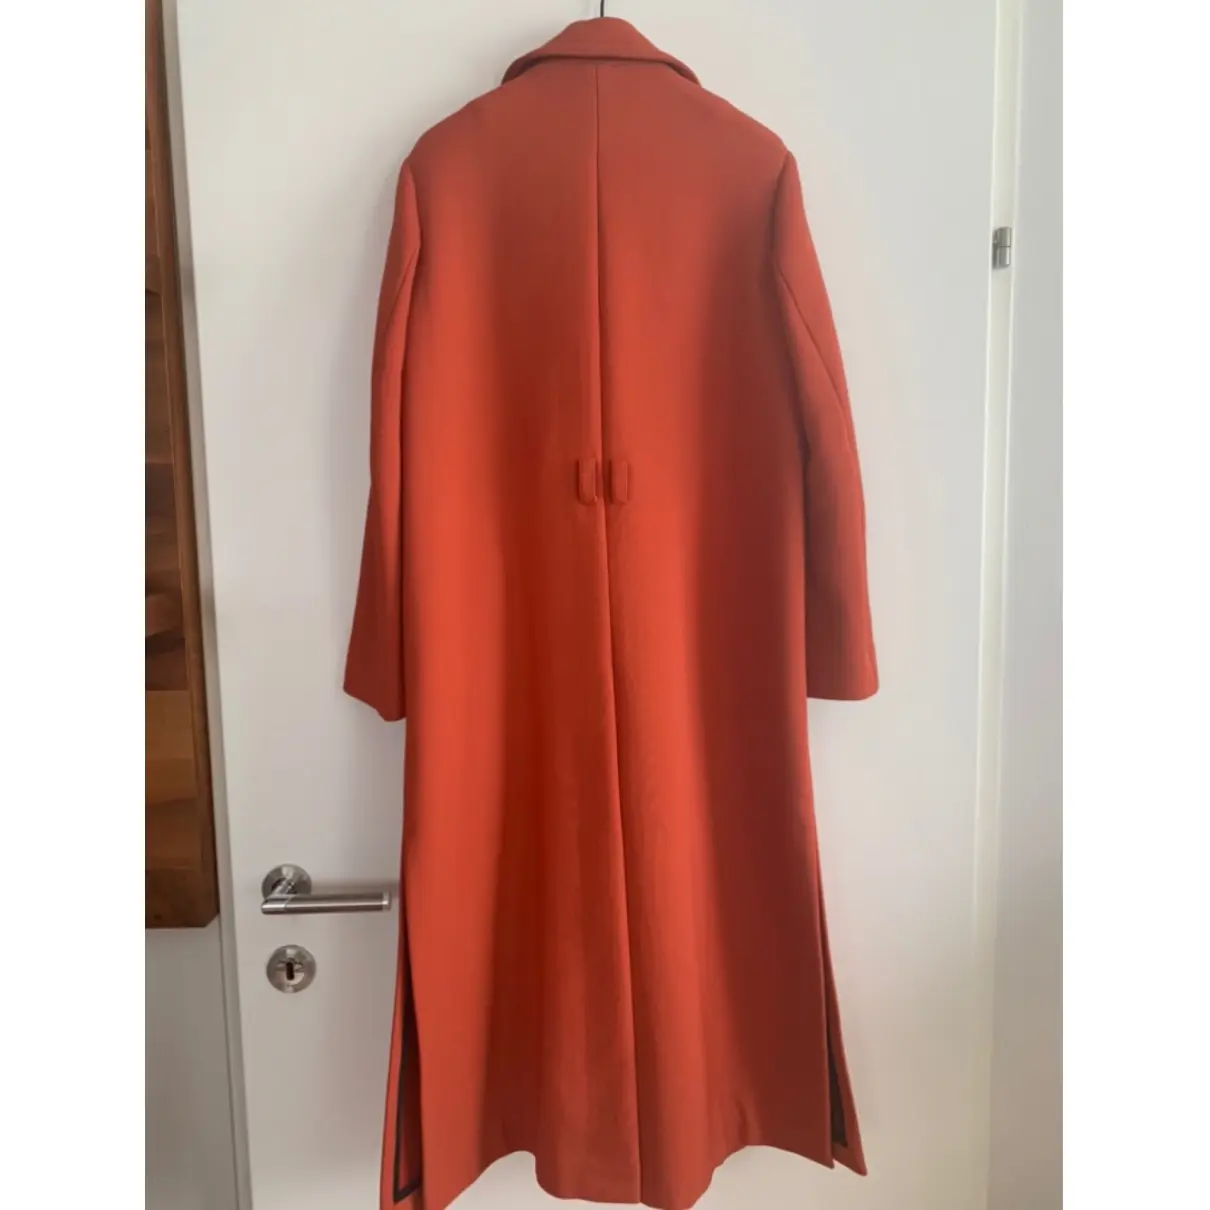 Buy Dorothee Schumacher Wool coat online